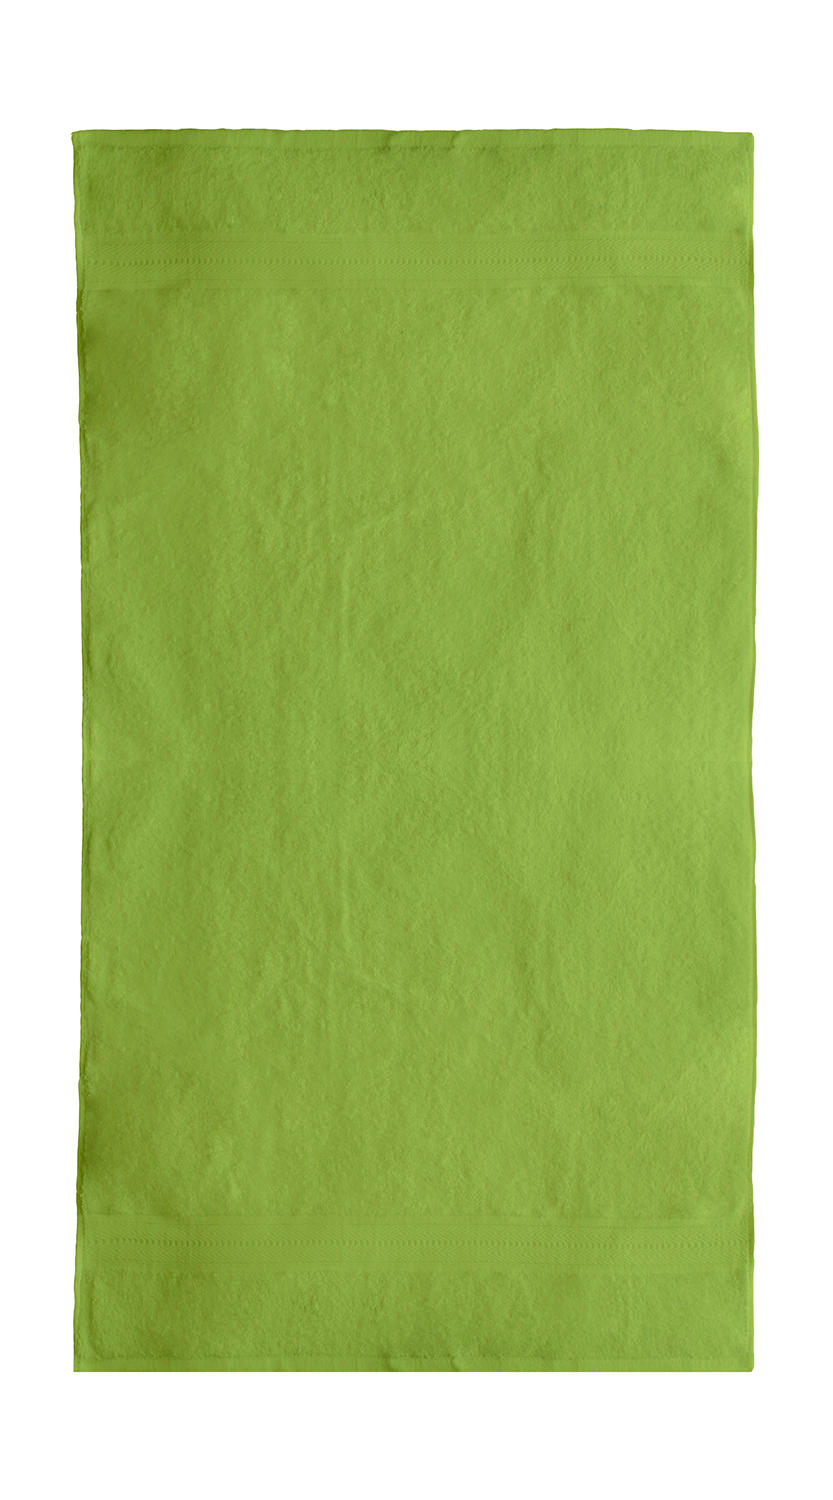  Rhine Bath Towel 70x140 cm in Farbe Bright Green